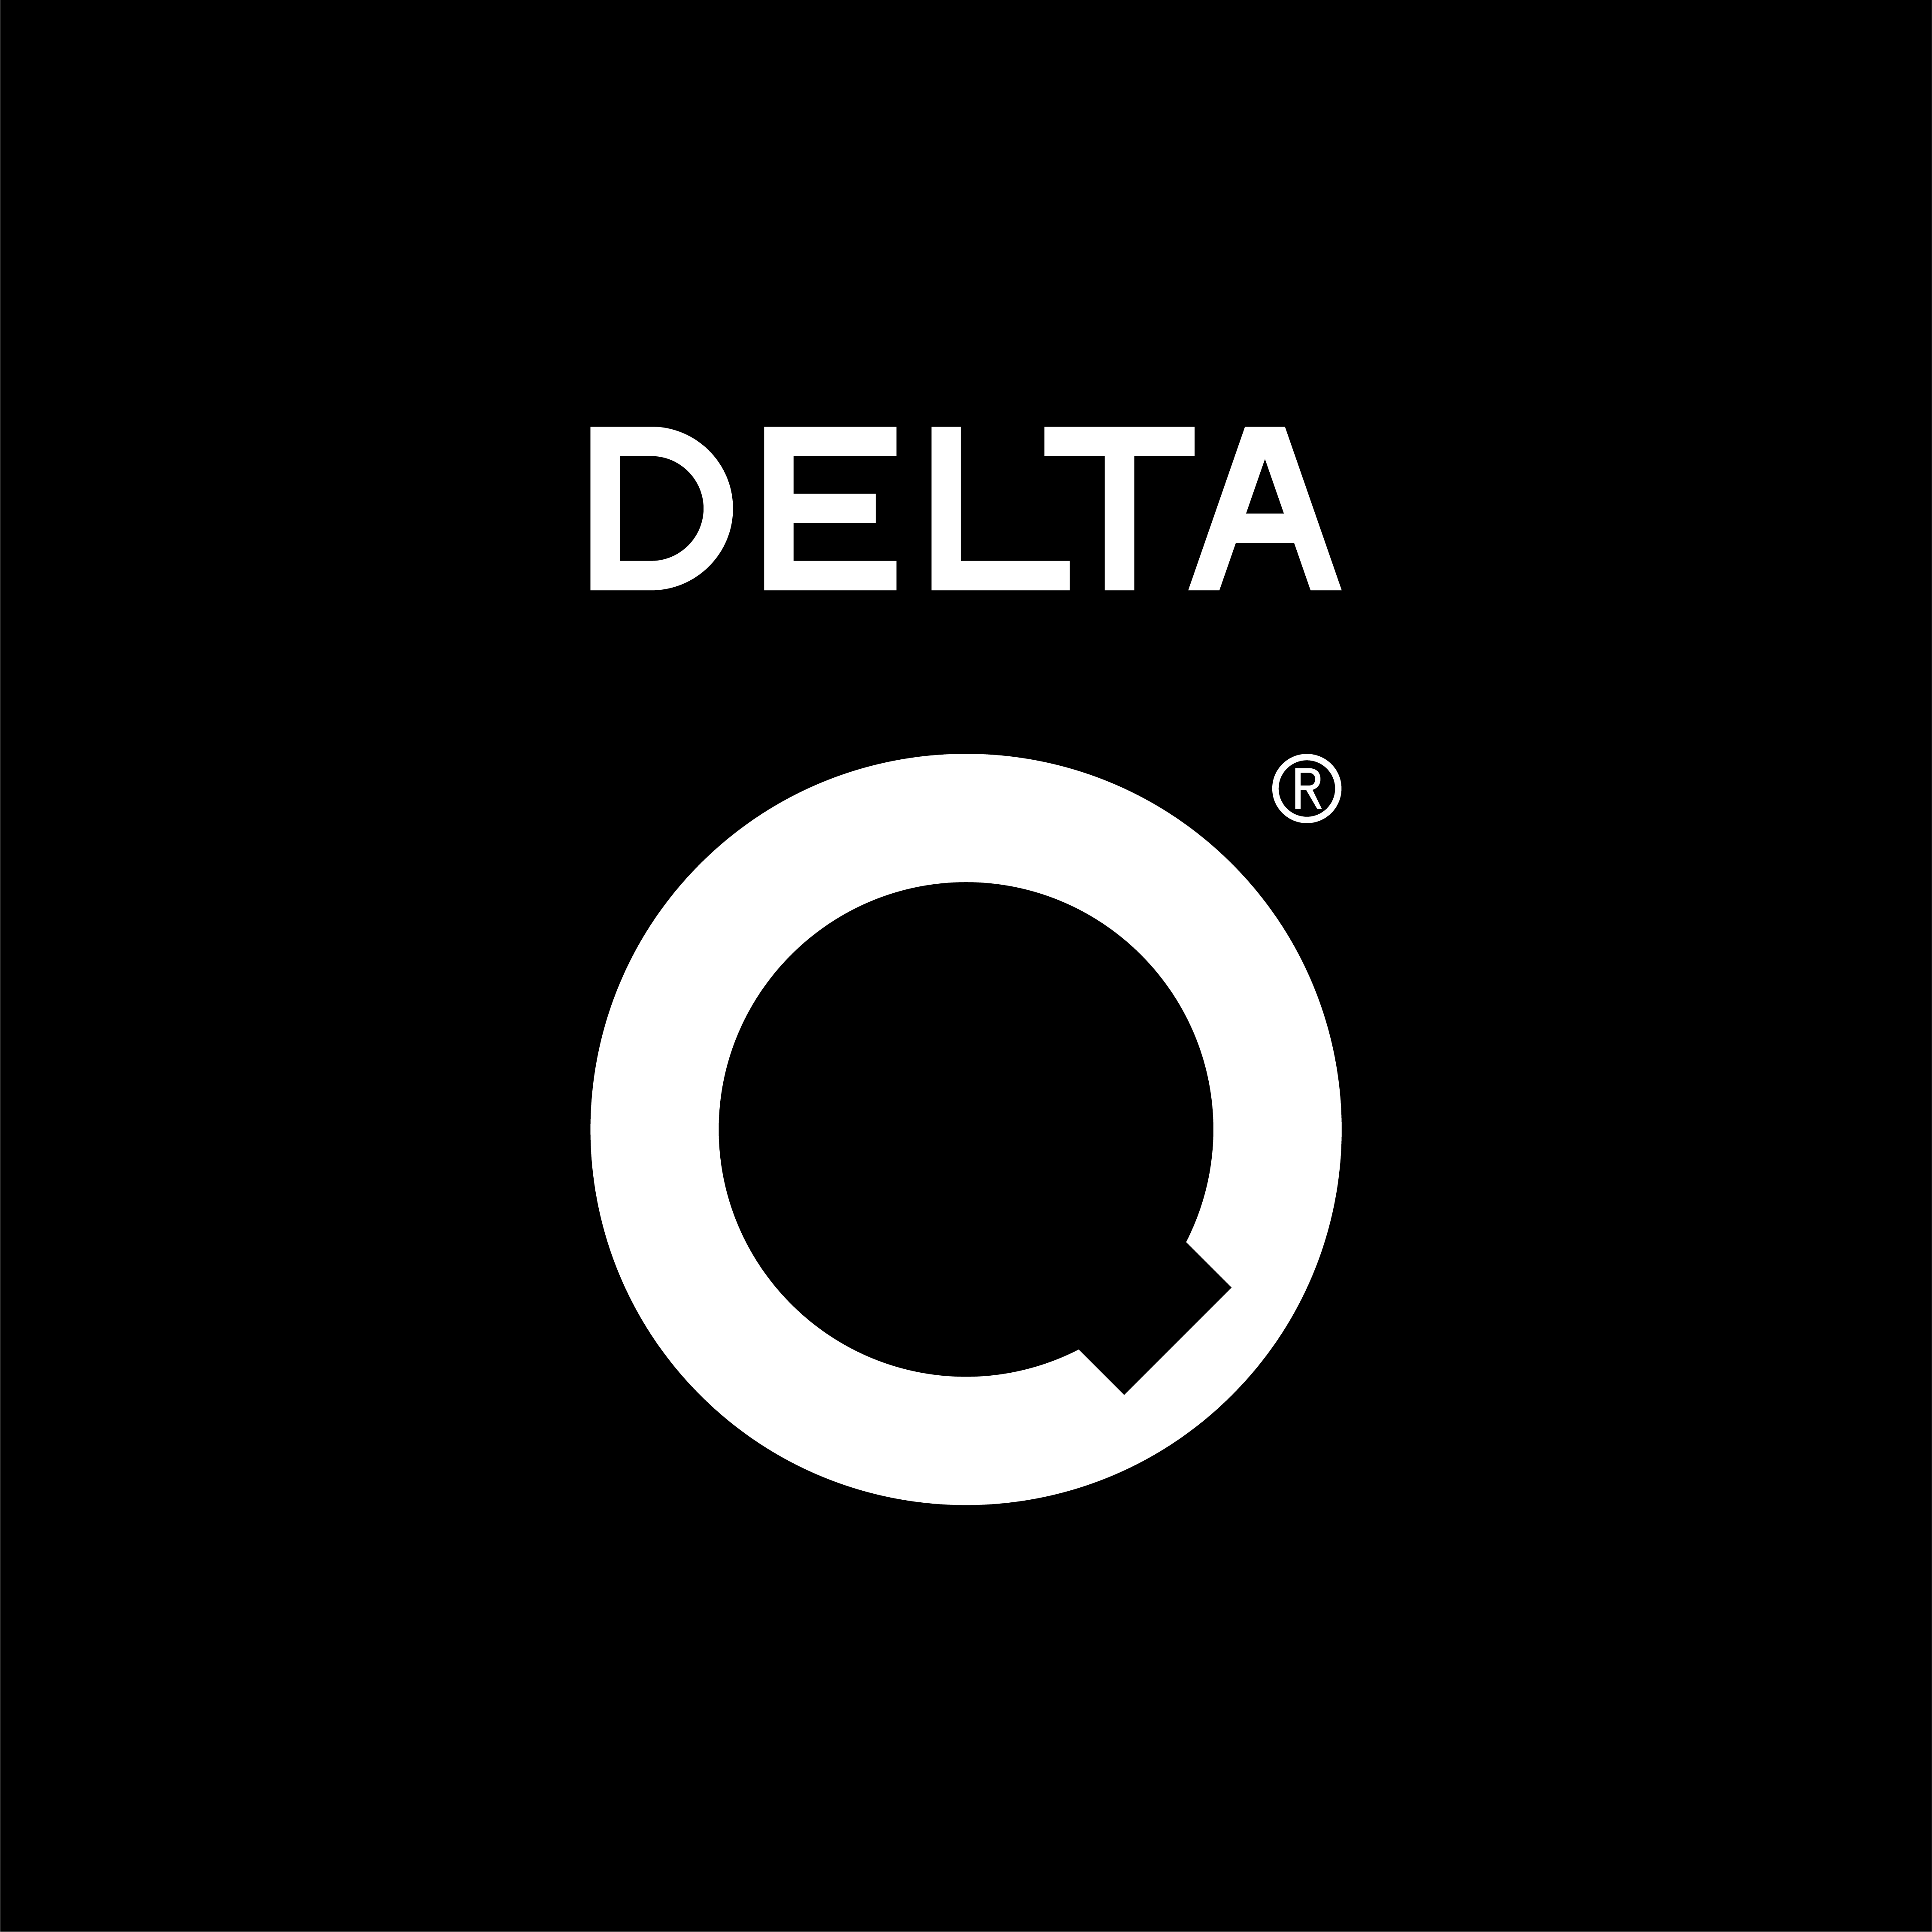 Delta Q - Studio Potes